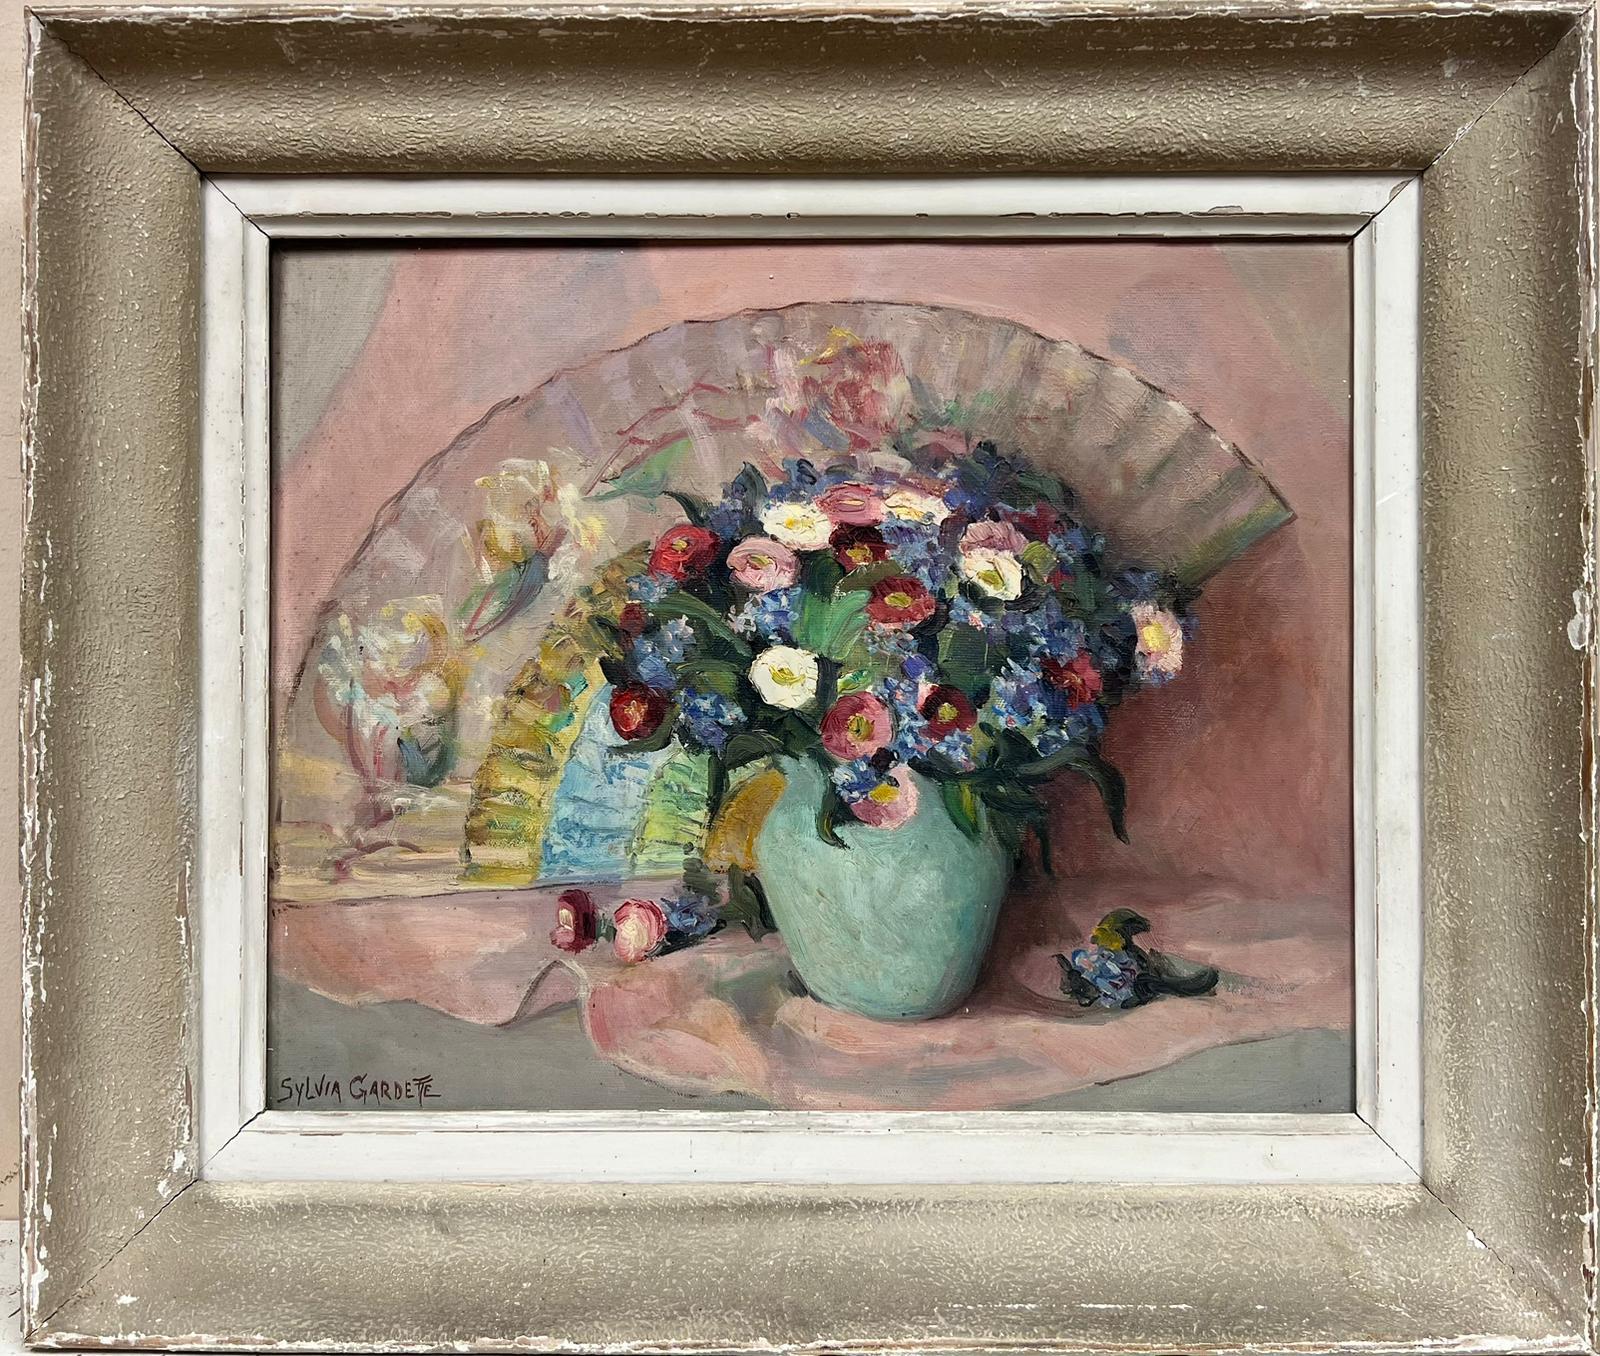 Französische signierte Ölvase mit schönen Blumen in Teal, Rosa Rücken, Mitte des 20. Jahrhunderts – Painting von 20th Century French School